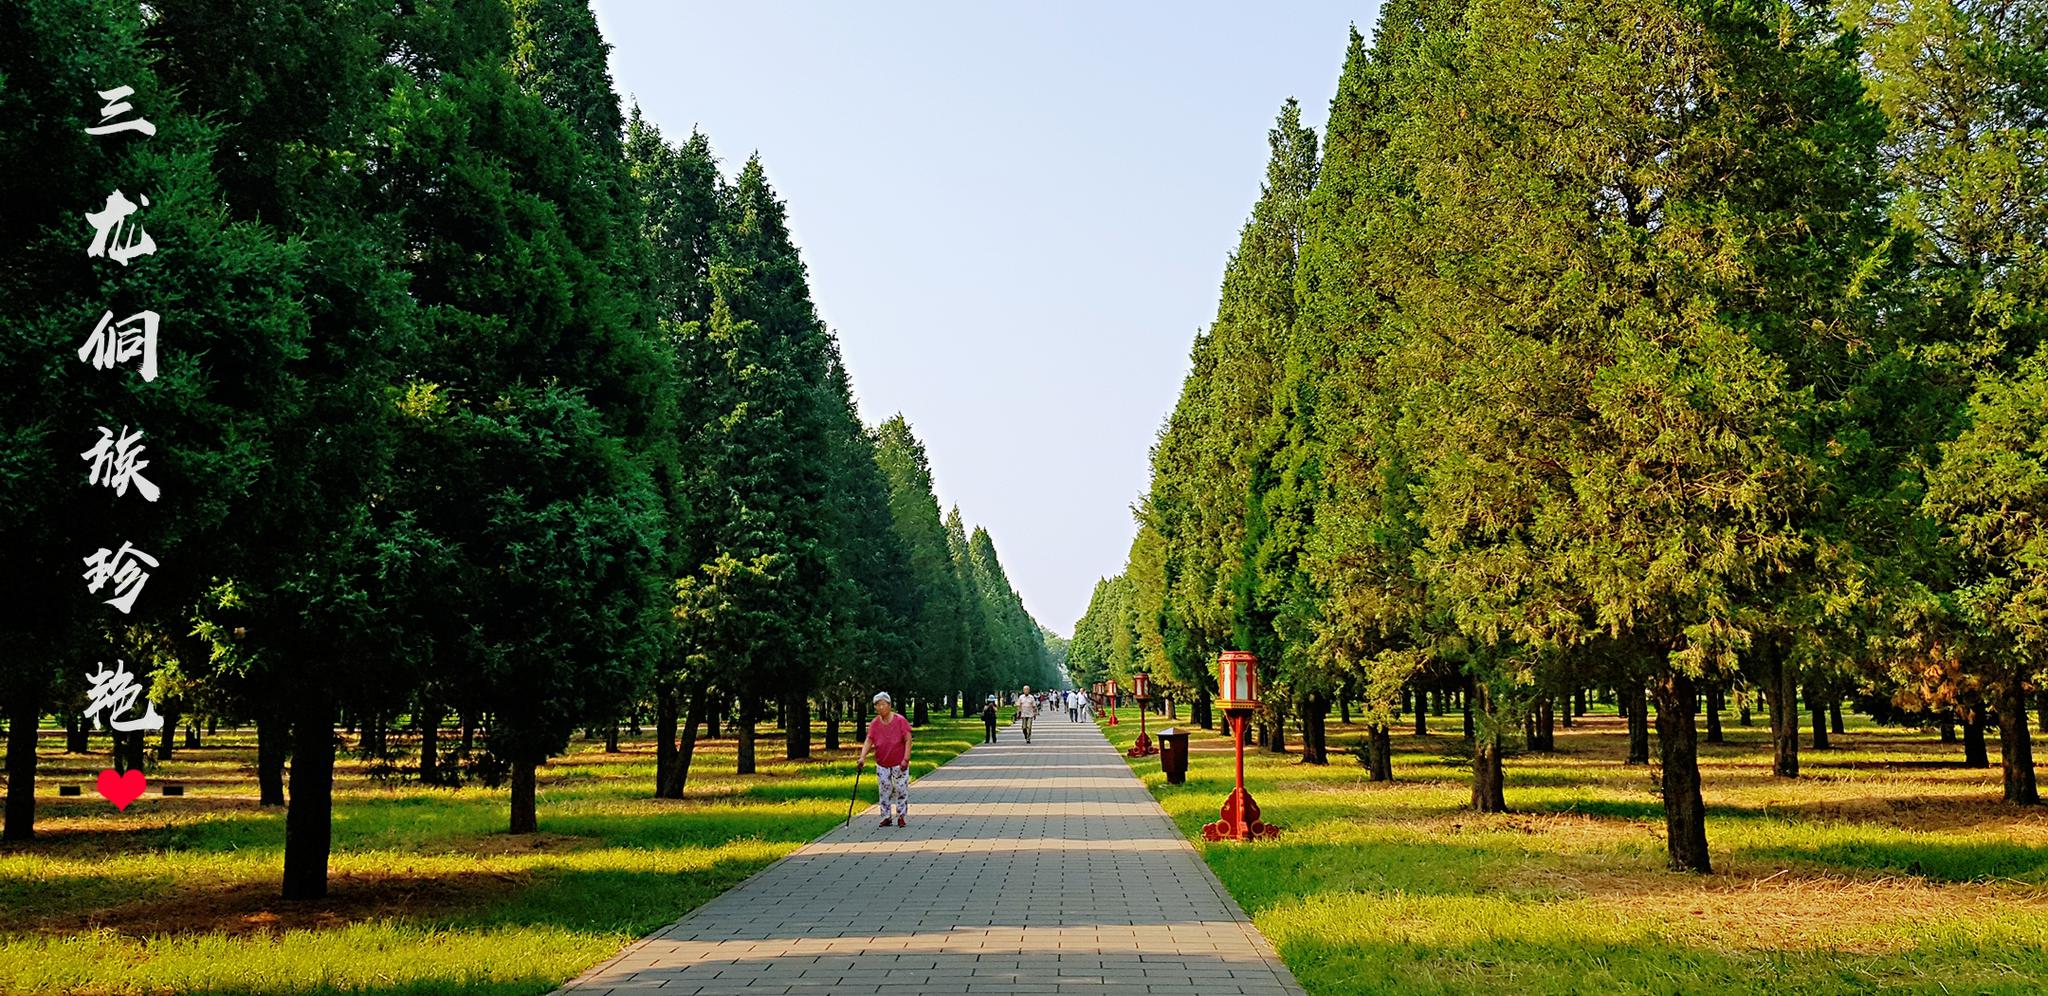 北京必游的天坛公园,原来环境这么美!